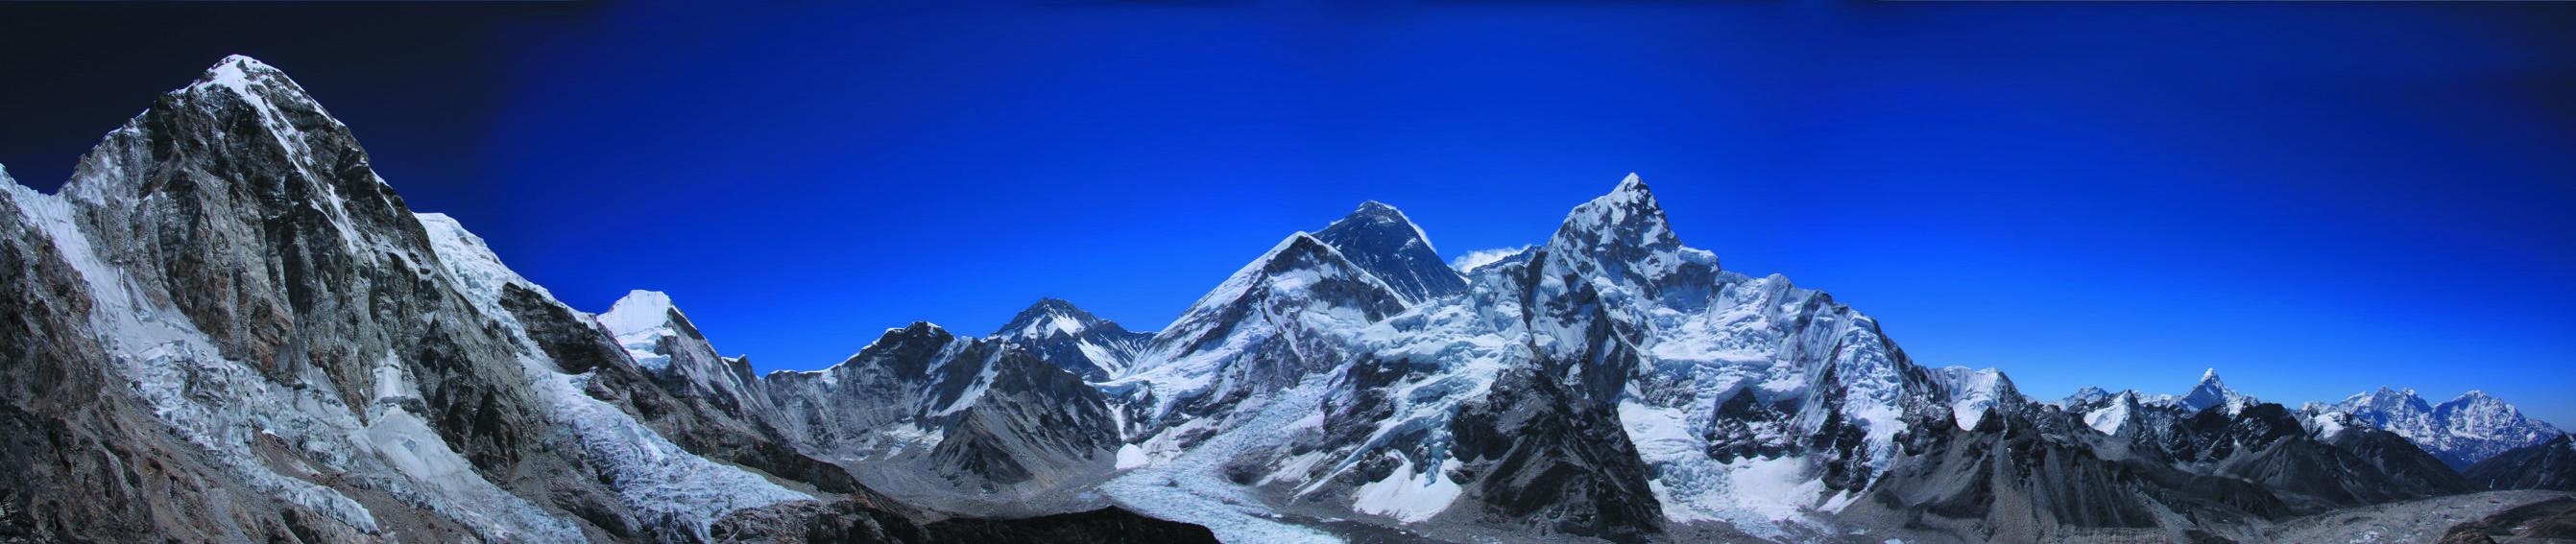 Secondo una ricerca italiana condotta sull'Everest la ridotta disponibilità di ossigeno in alta quota causa un aumento progressivo della pressione arteriosa nelle 24 ore